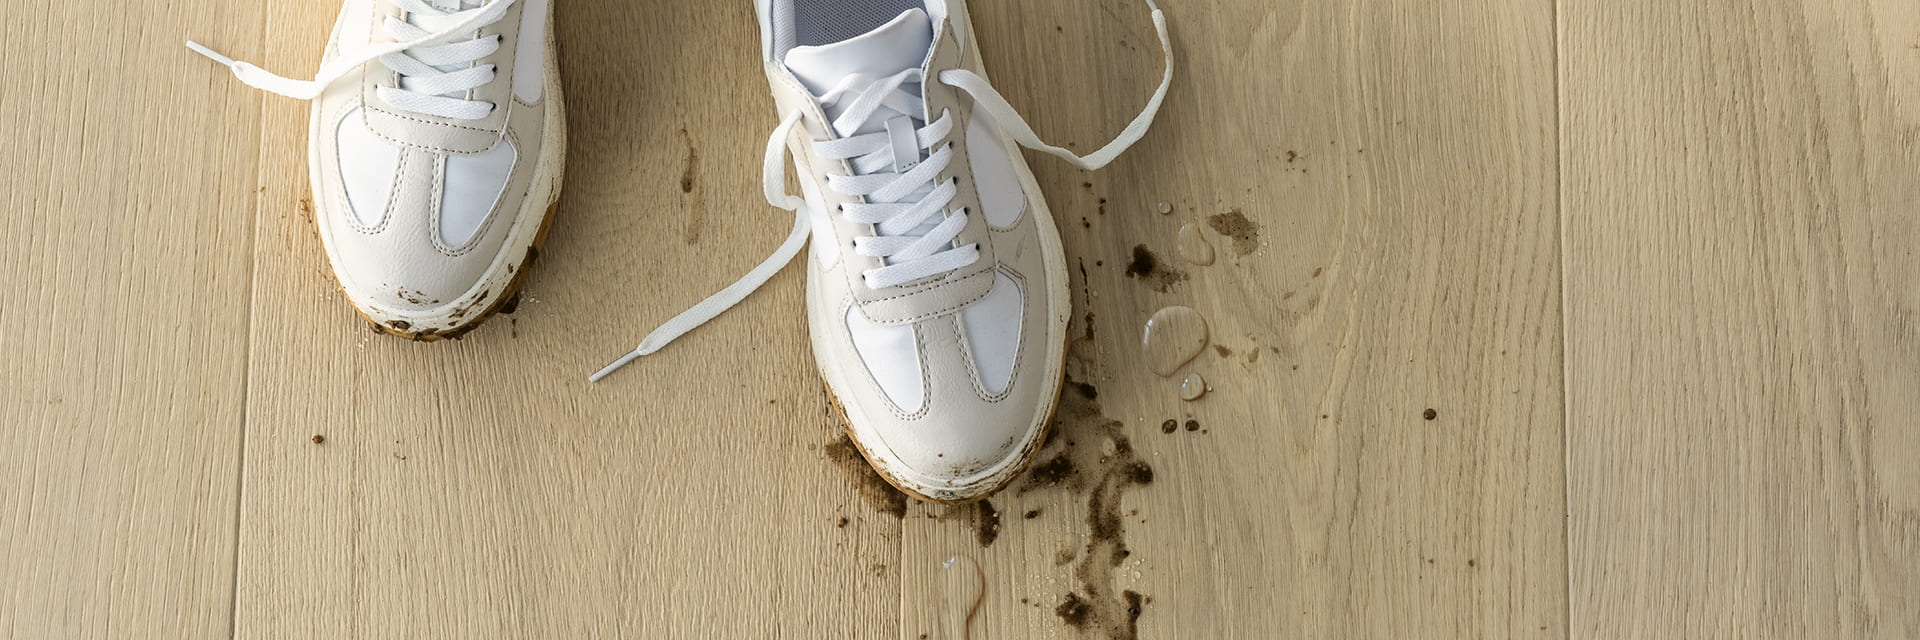 gros plan sur des chaussures sales avec de la boue et de l’eau renversées sur un parquet beige